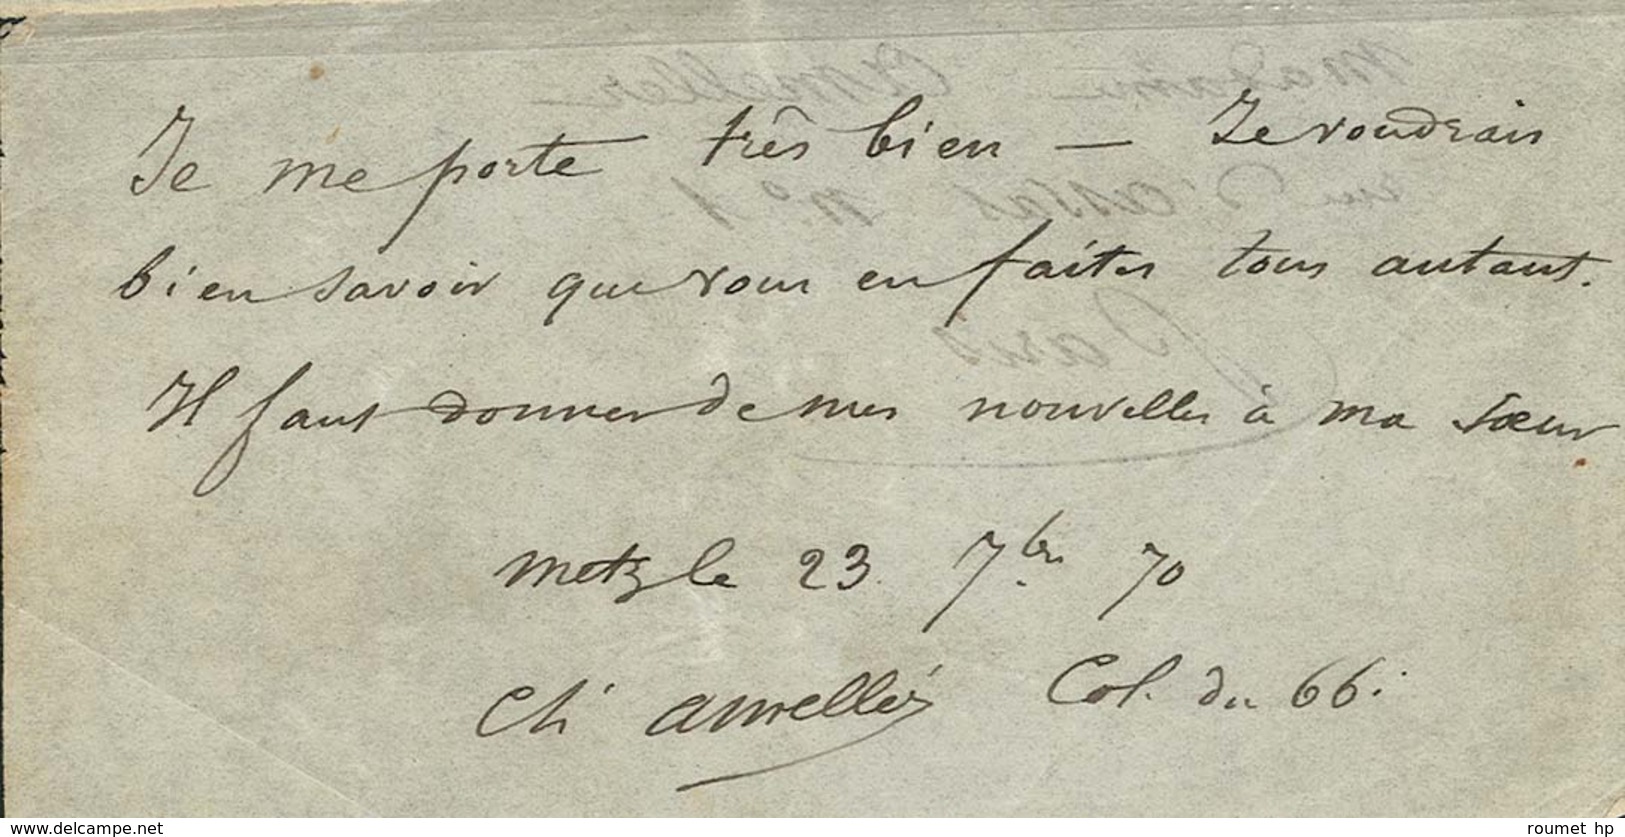 Ensemble de 5 papillons de Metz datés du 19 au 23 Septembre 1870 non expédiés, leur auteur le Colonel Ameller ayant été 